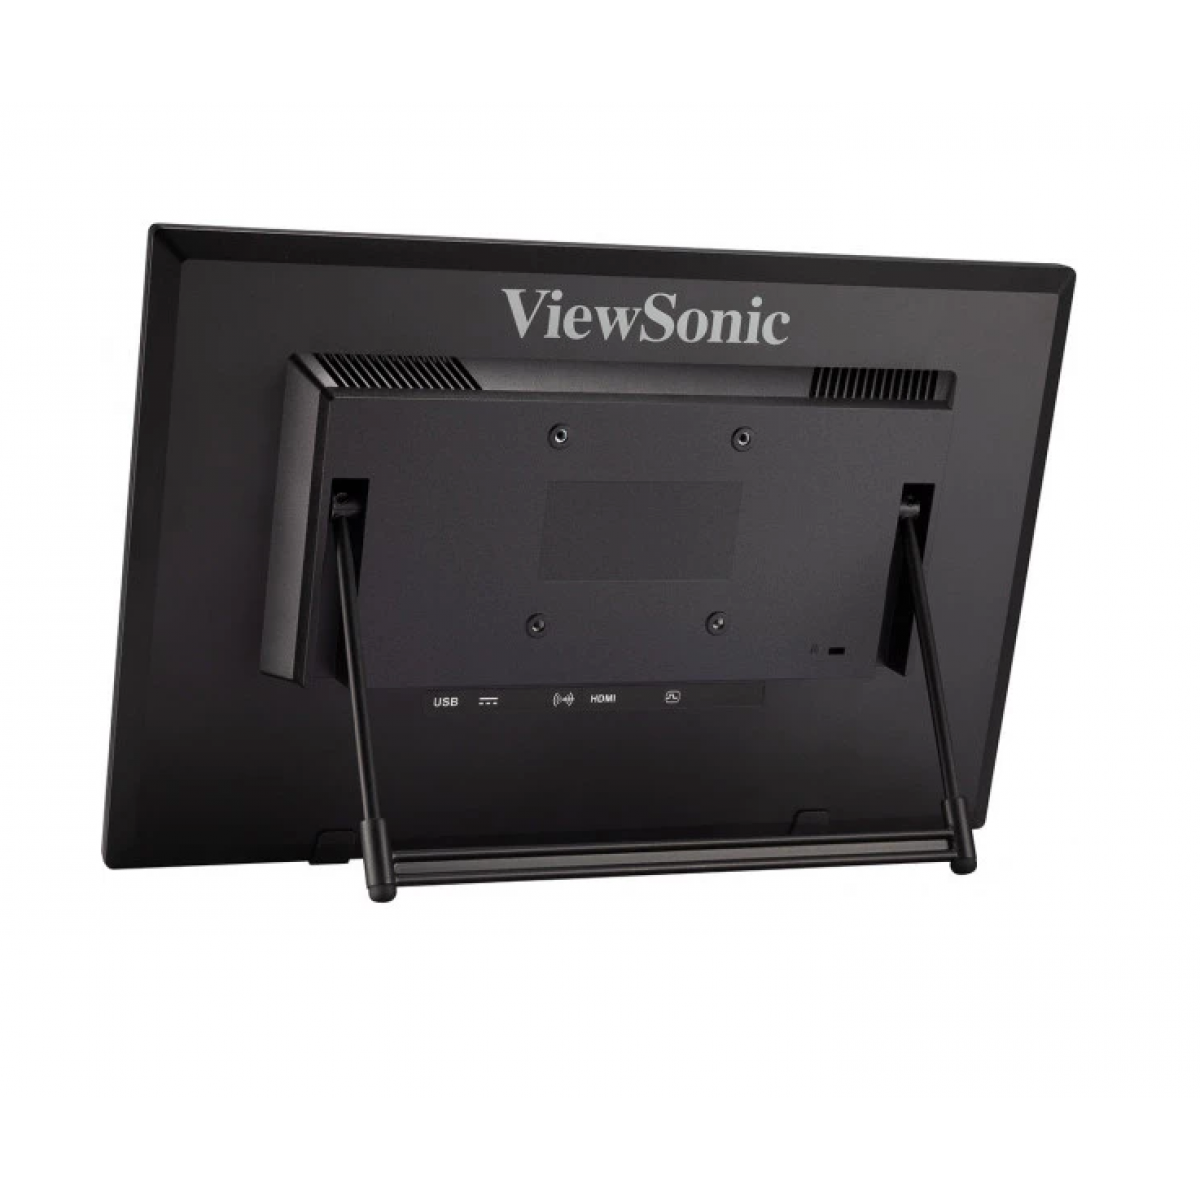 Màn hình cảm ứng ViewSonic TD1630-3 16inch